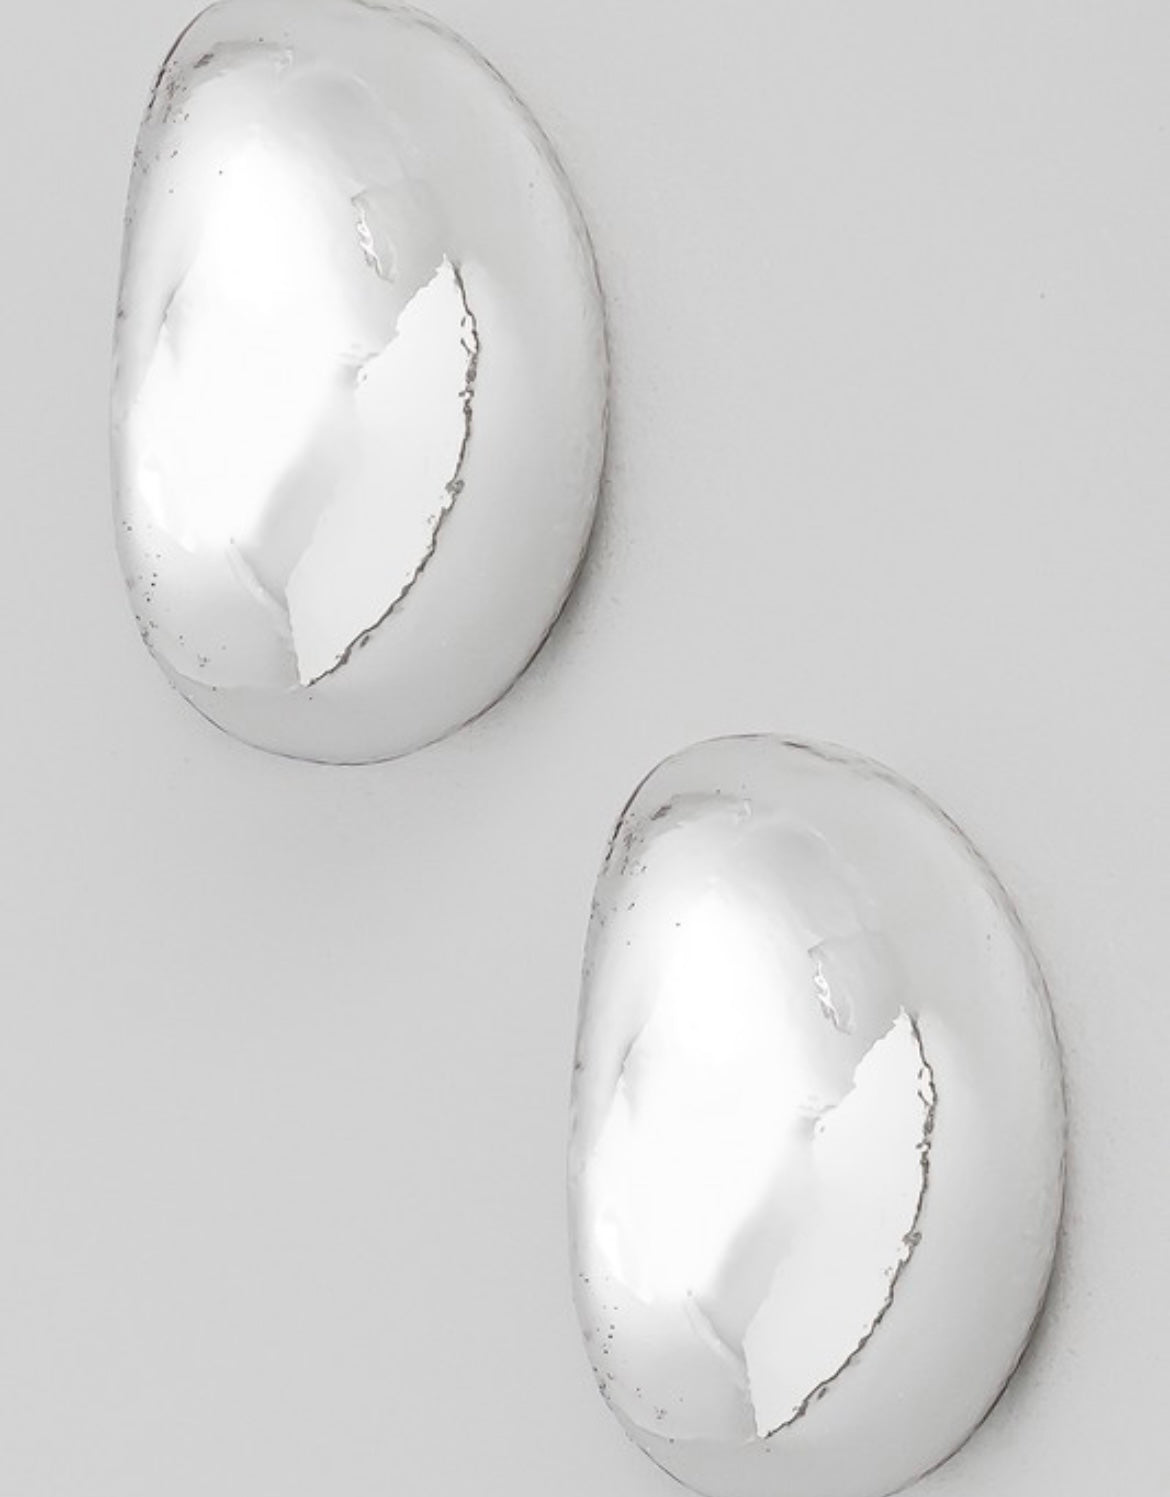 oval drop earrings